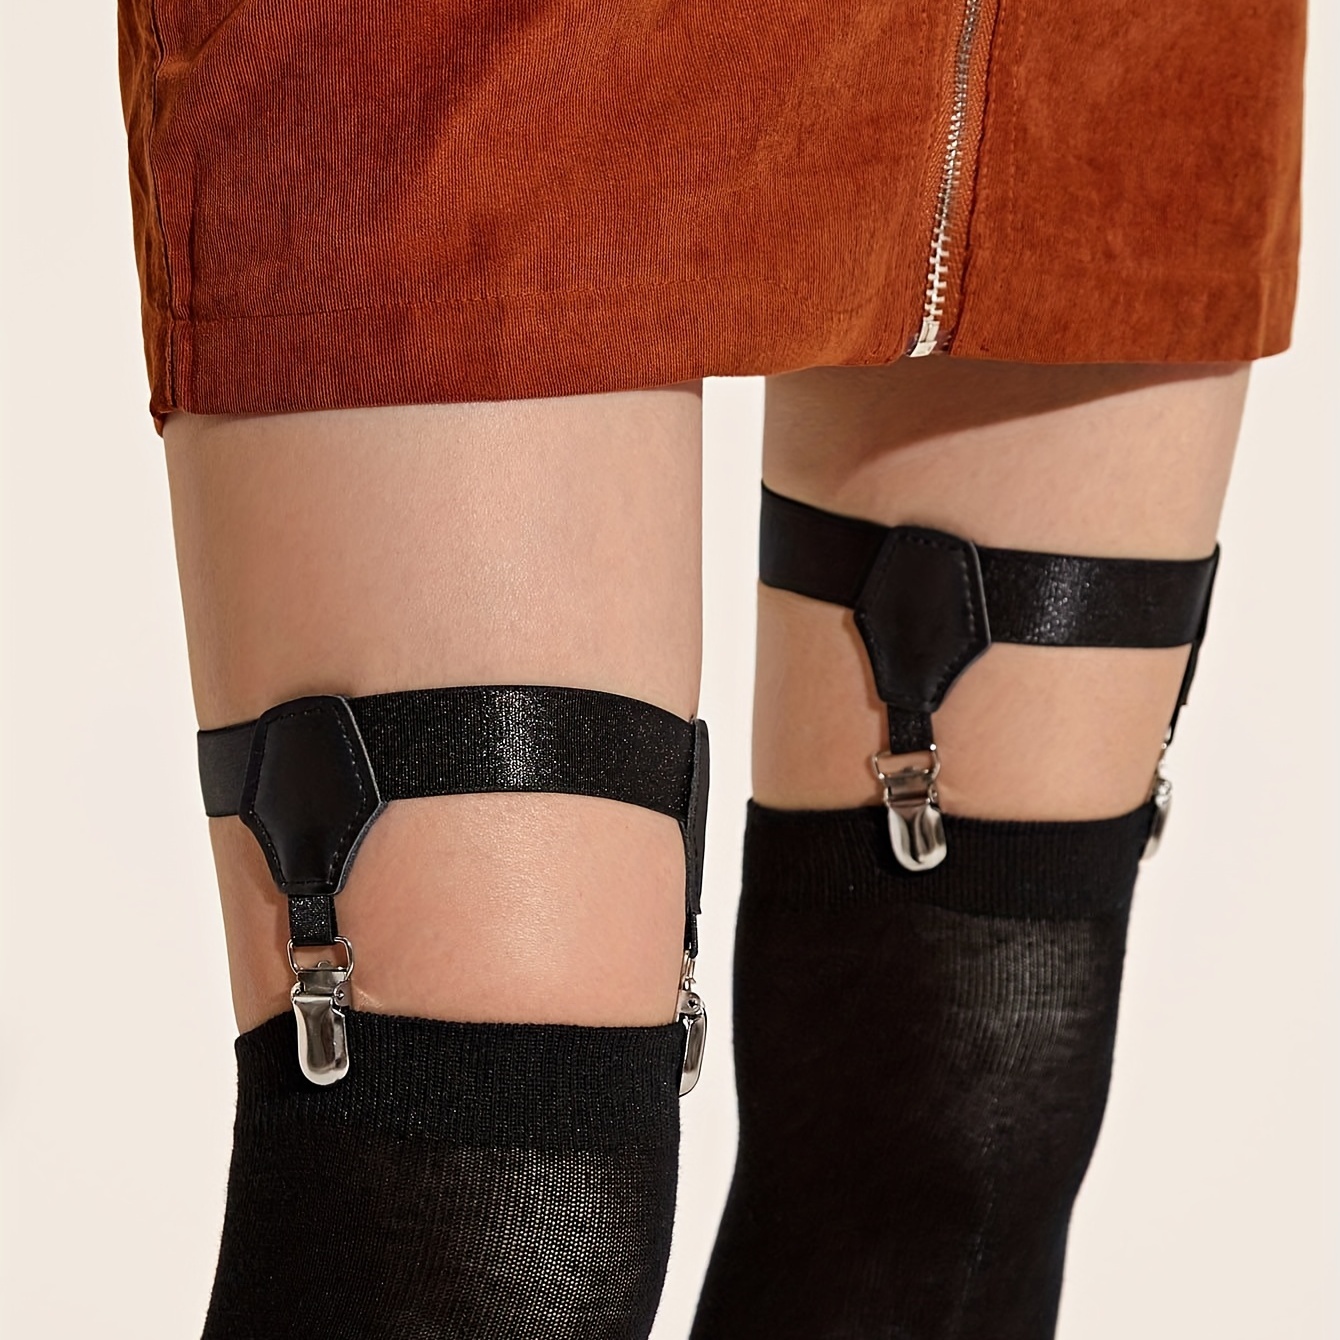 2個の黒い靴下レッグガーターベルトエラスティックハーネスカーフ太ももソックスガーターベルト調整可能な頑丈なクリップソックスガーター女性用